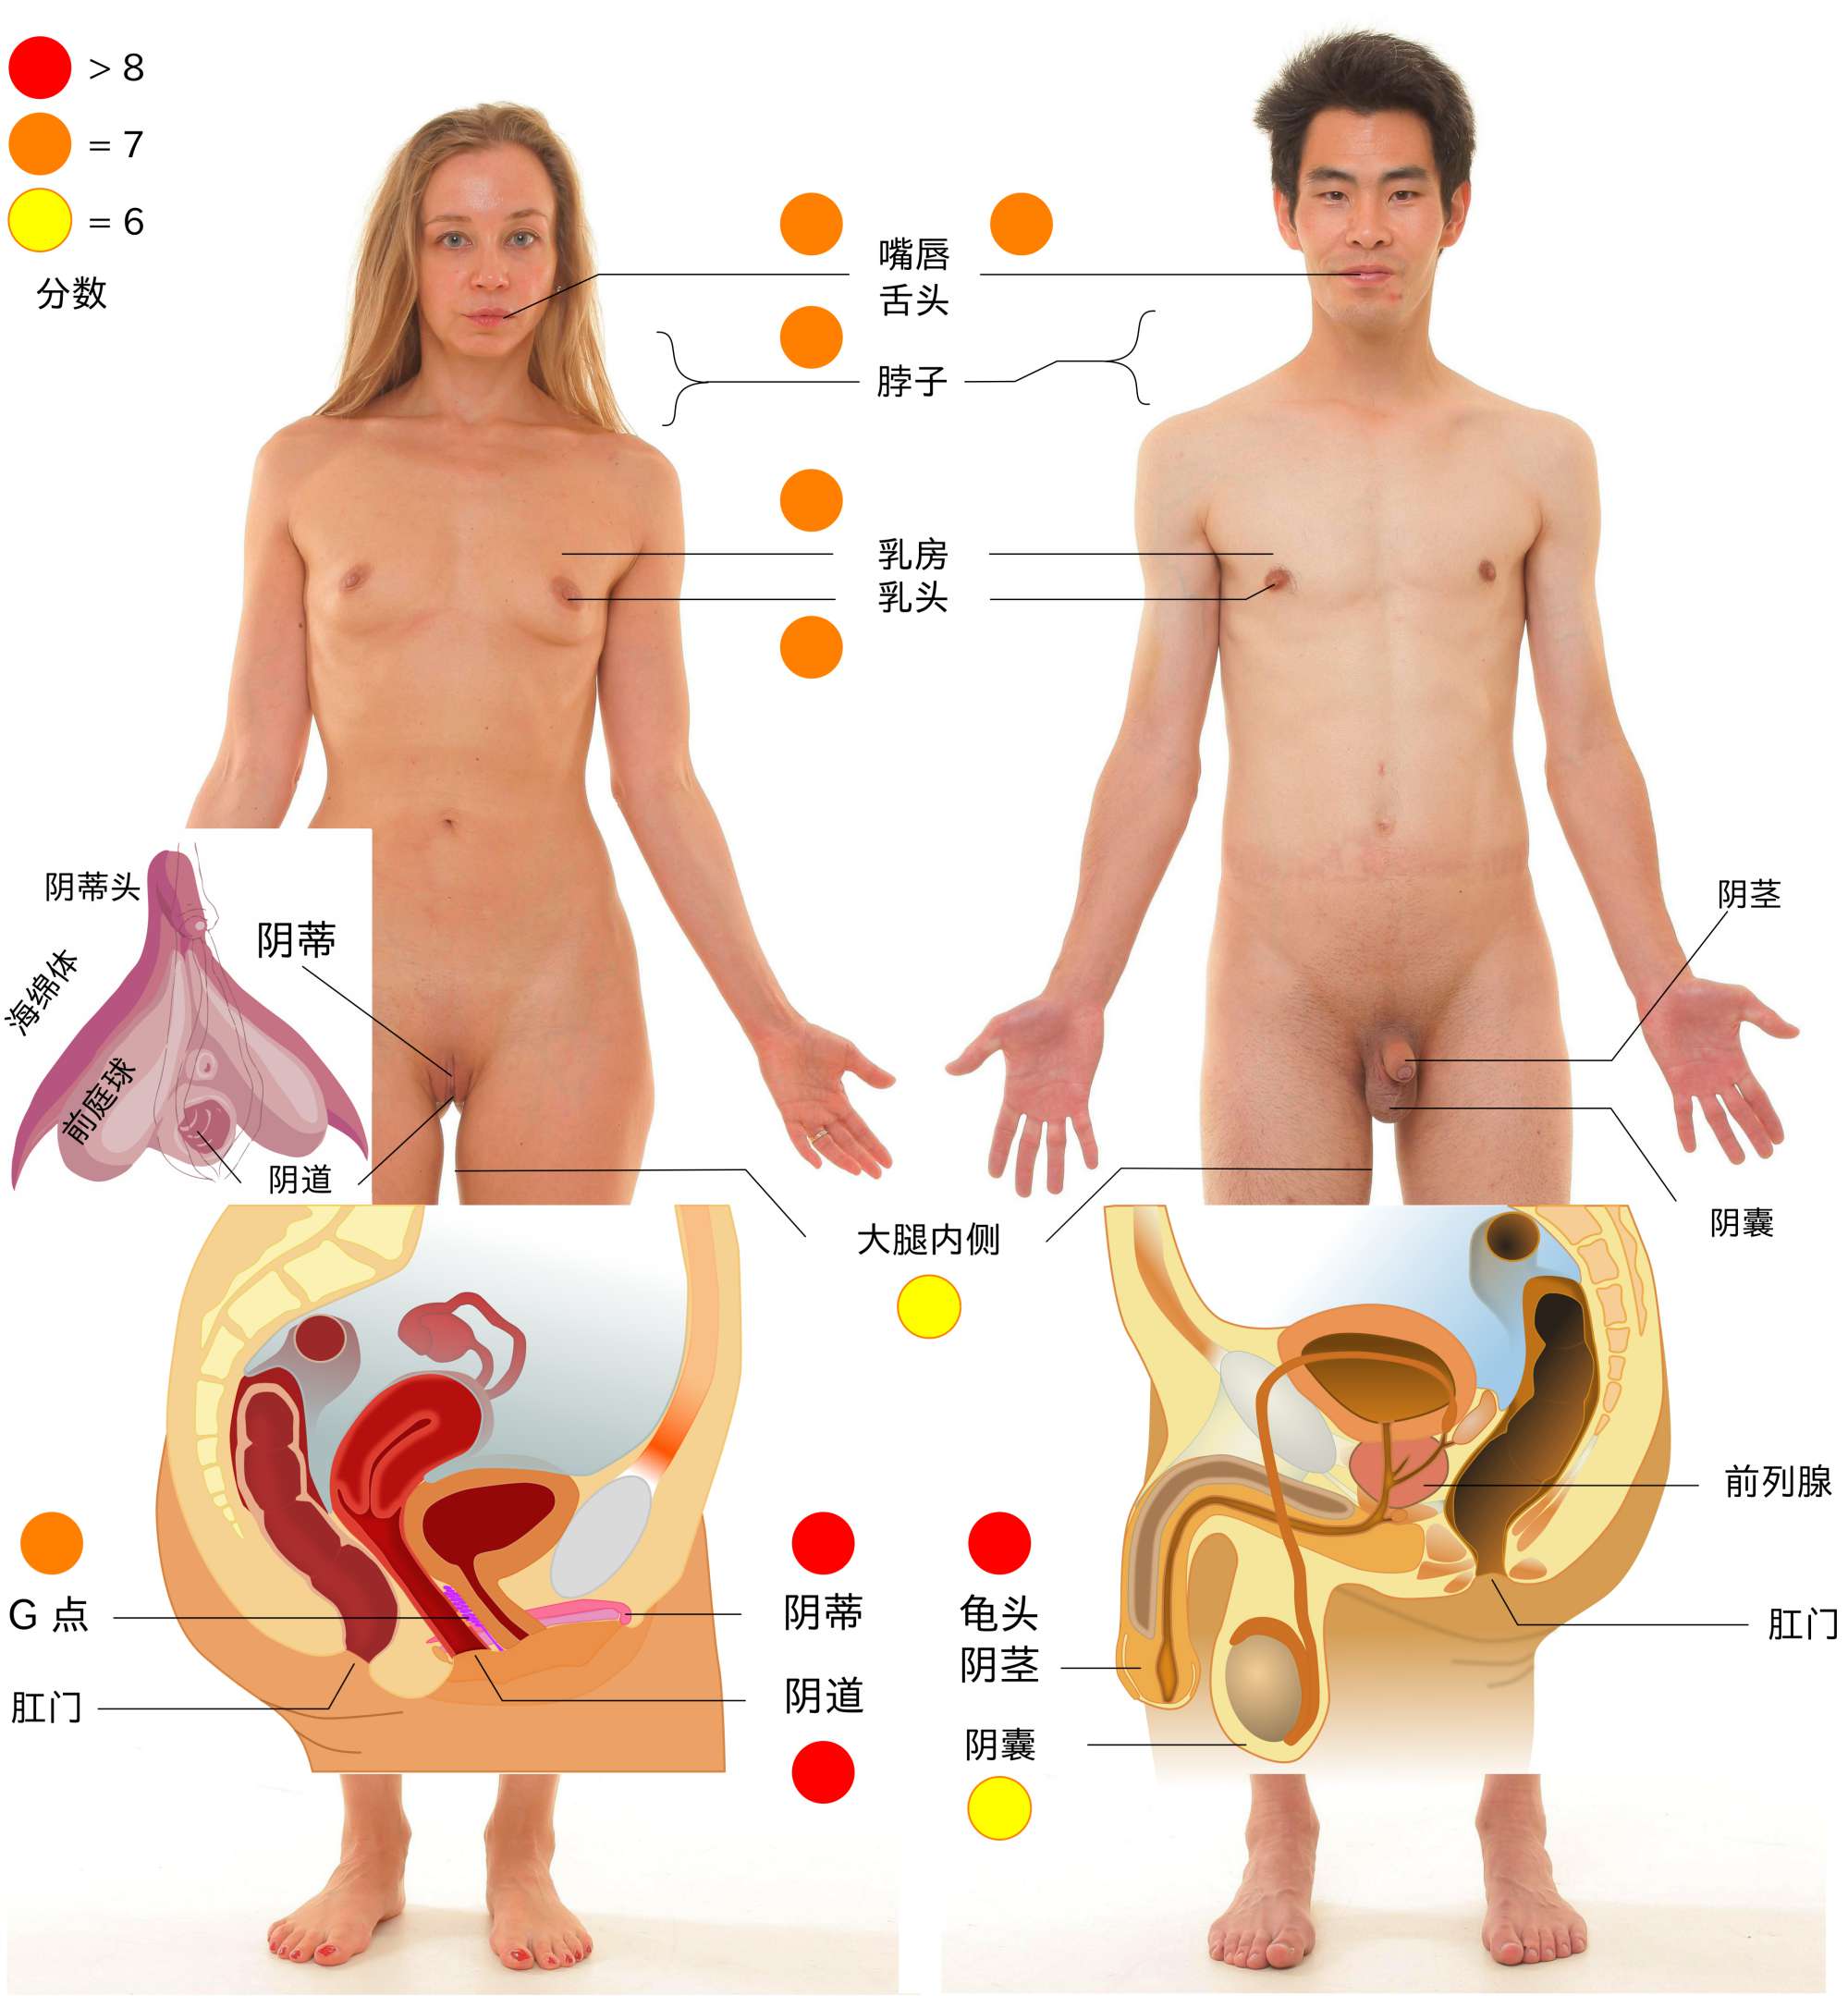 人體的主要性感帶。詳細說明請參考下文。